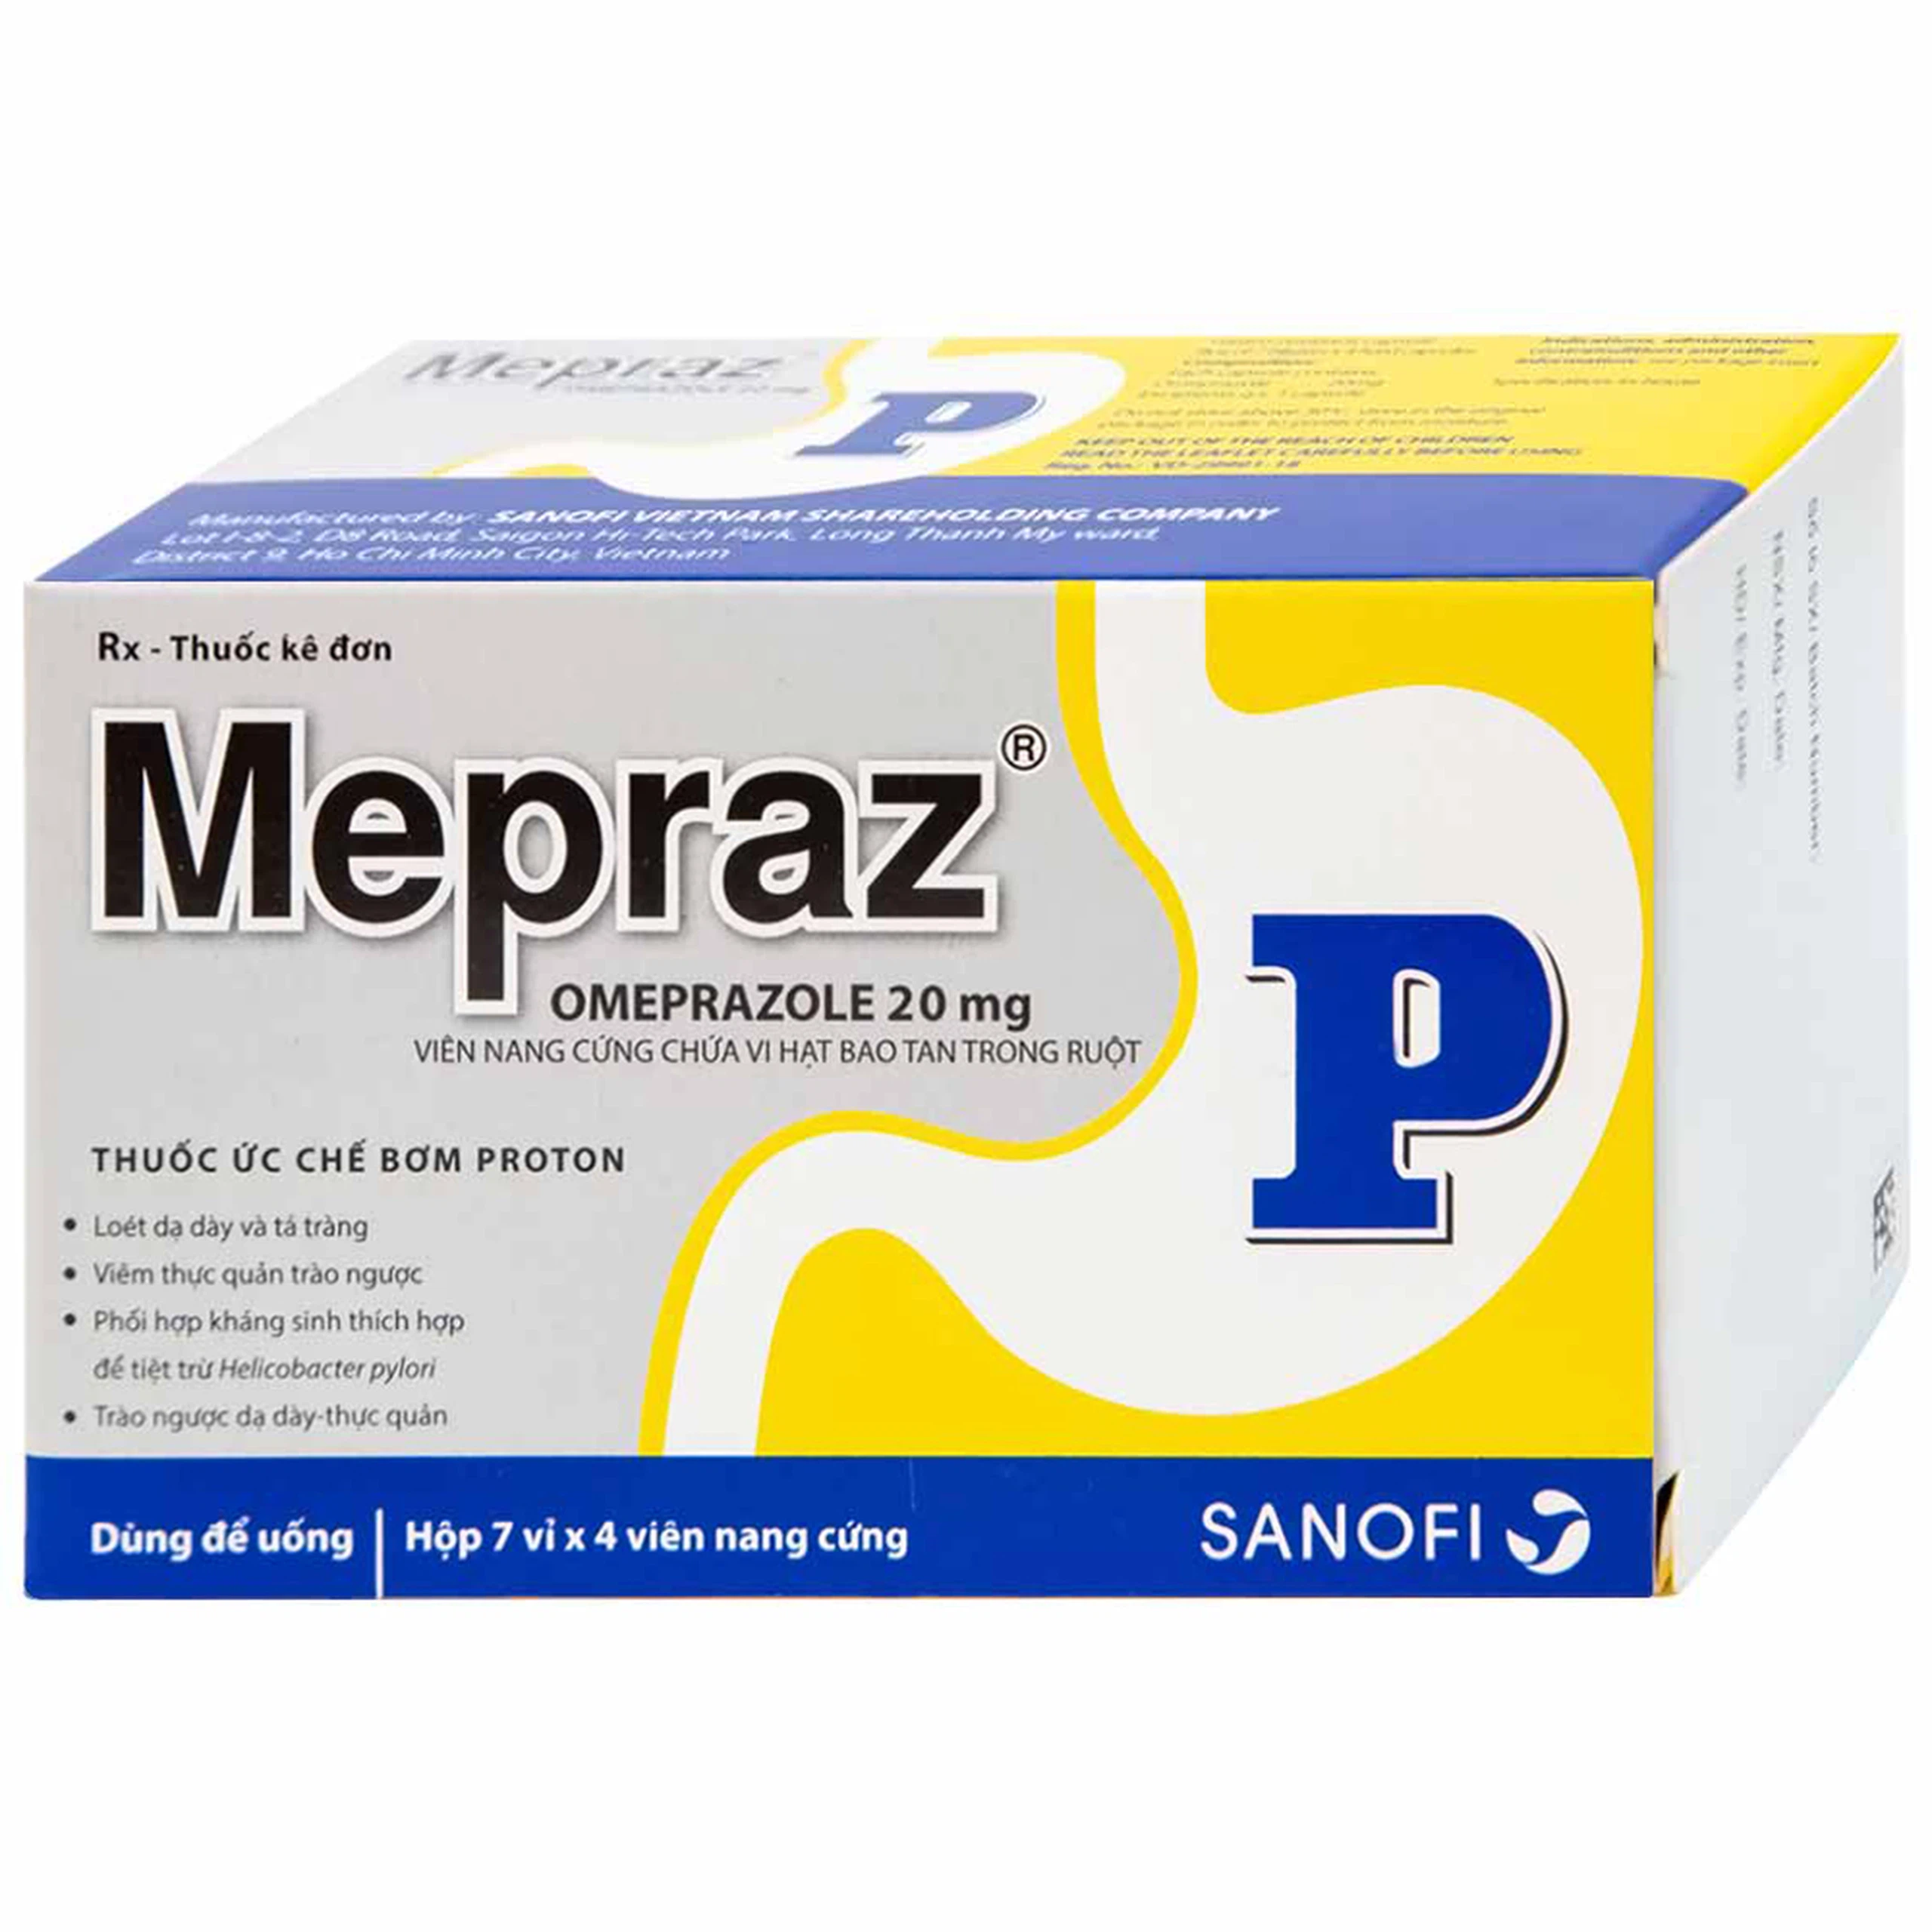 Viên nang cứng Mepraz 20mg Sanofi điều trị loét dạ dày tá tràng, viêm thực quản trào ngược (7 vỉ x 4 viên)